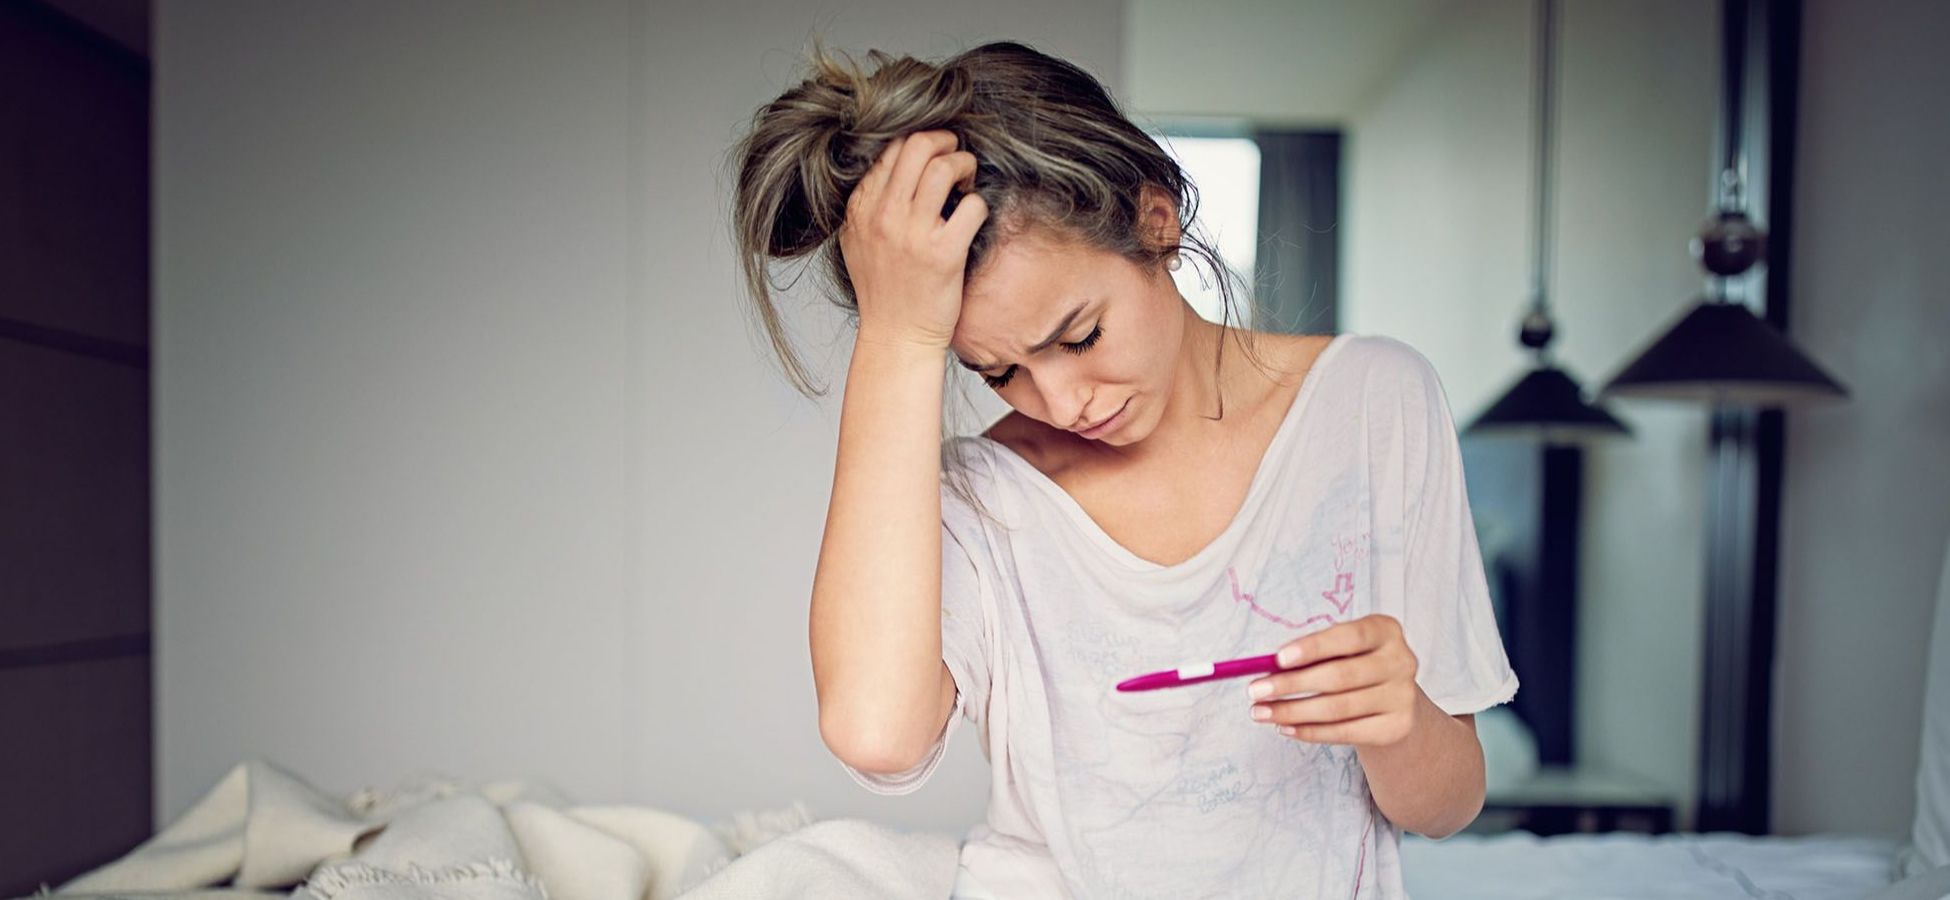 Frau schaut schockiert auf einen Schwangerschaftstest